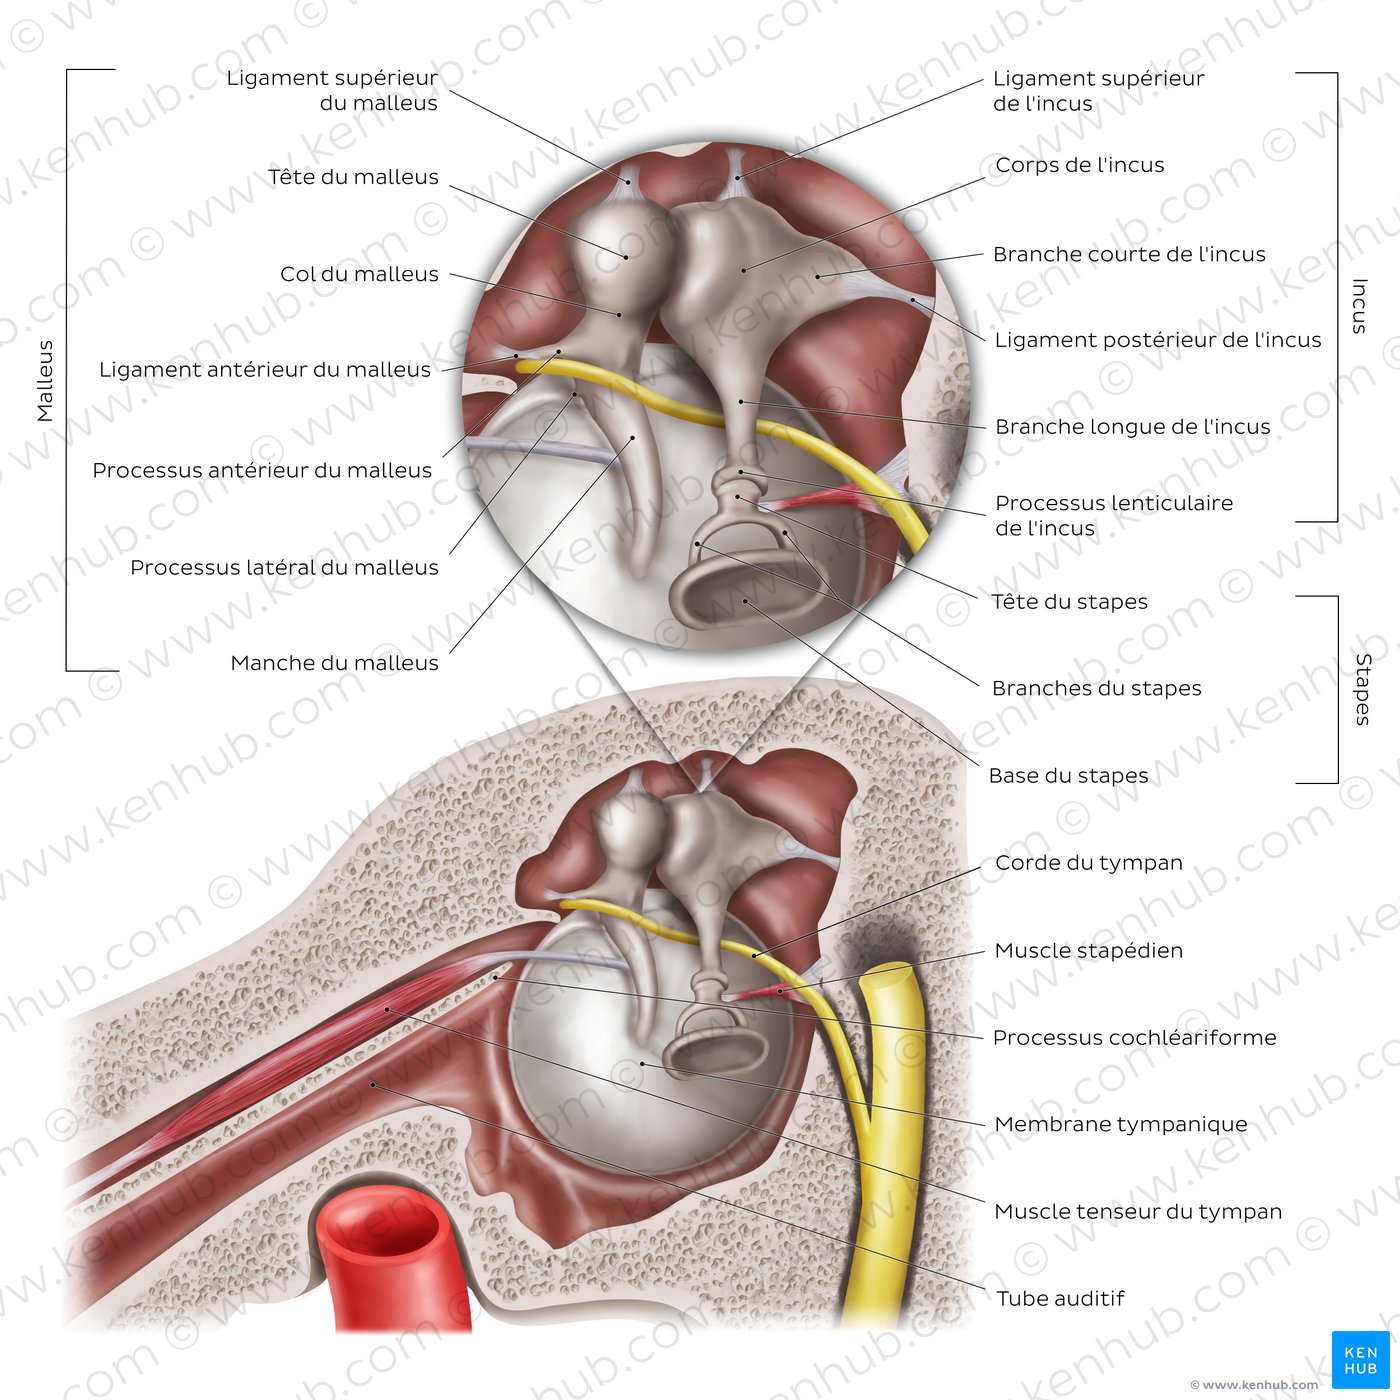 Oreille moyenne et osselets auditifs (schéma)